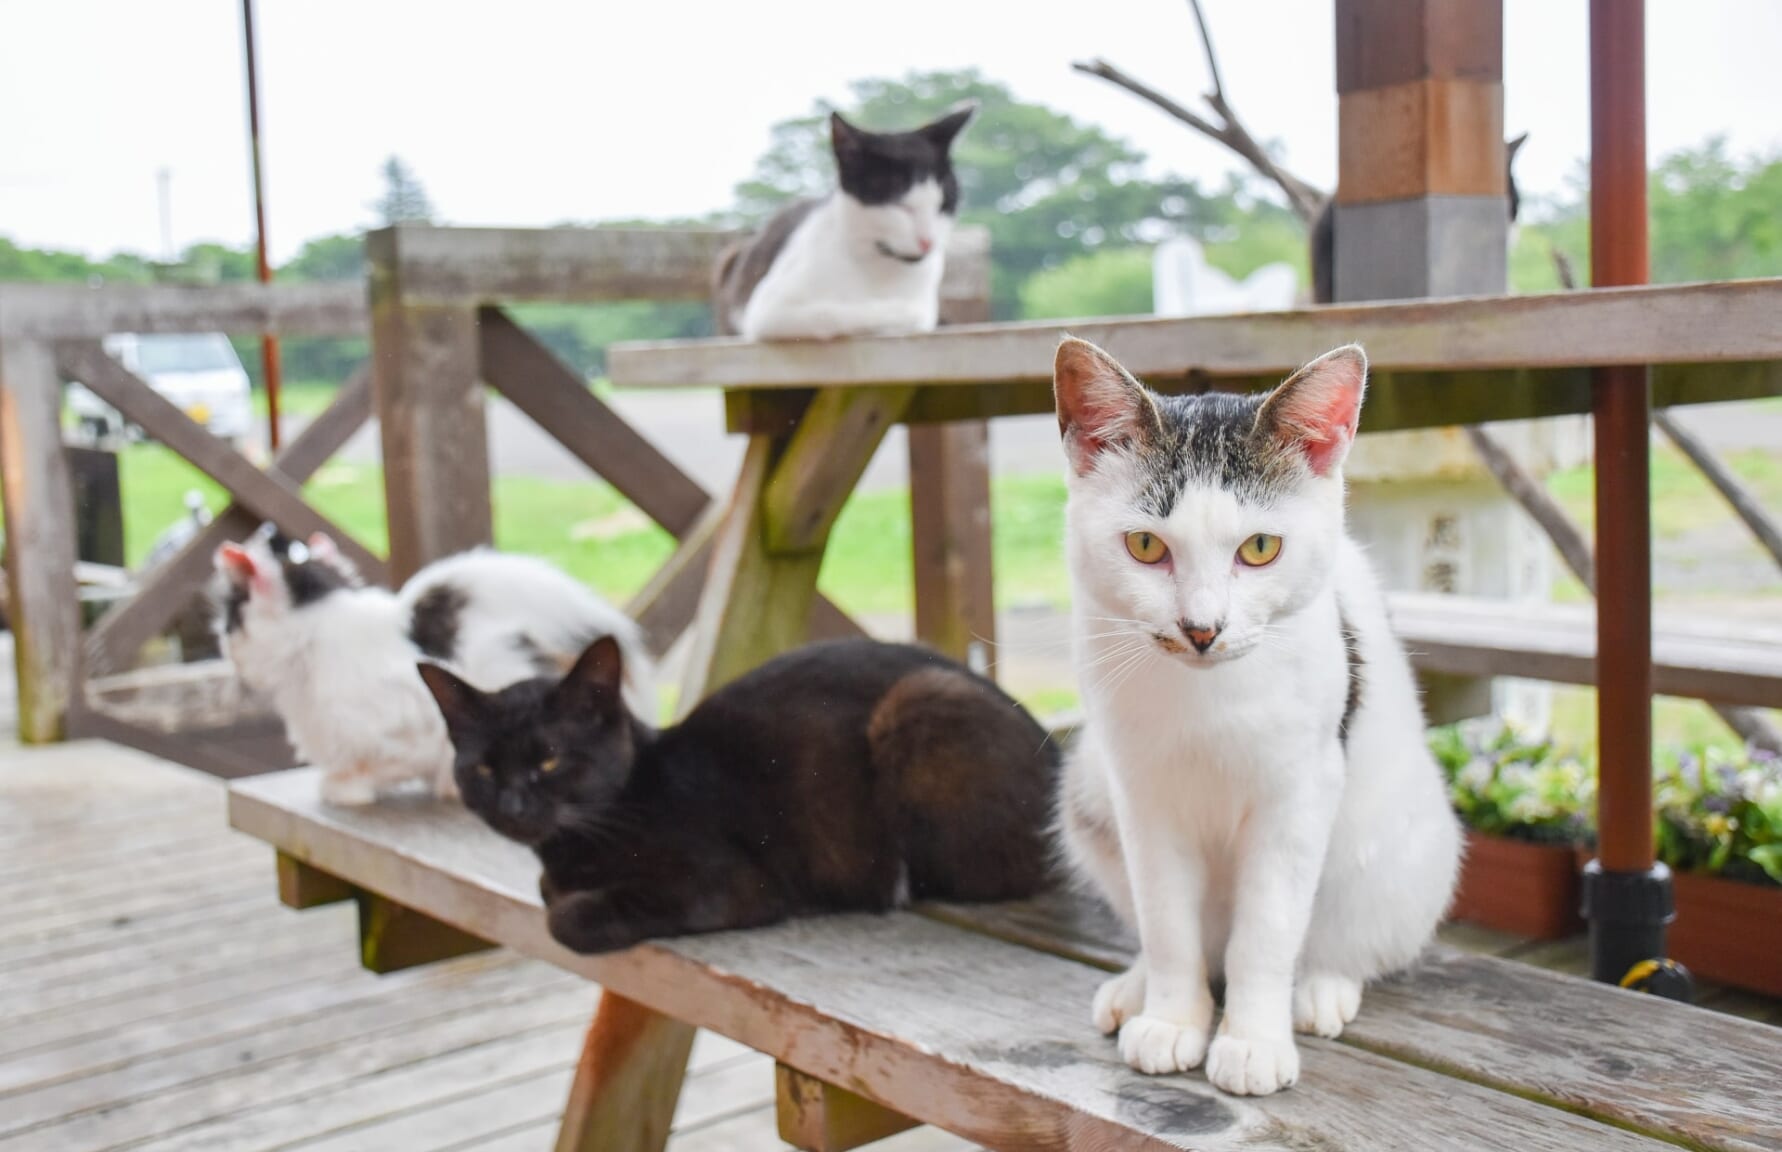 Cats from Tashiro Island